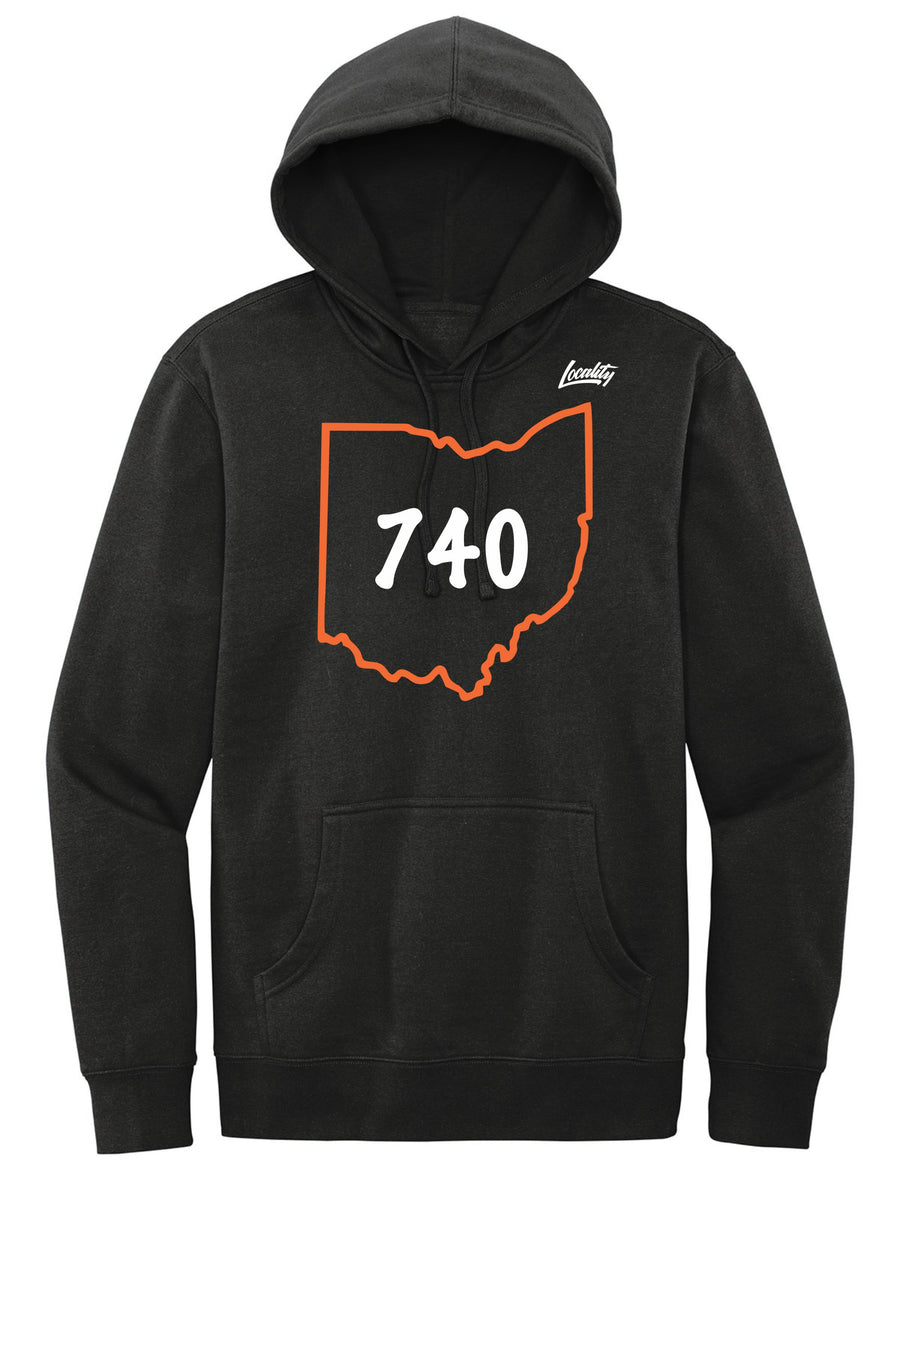 Cincinnati 740 State Hoodie